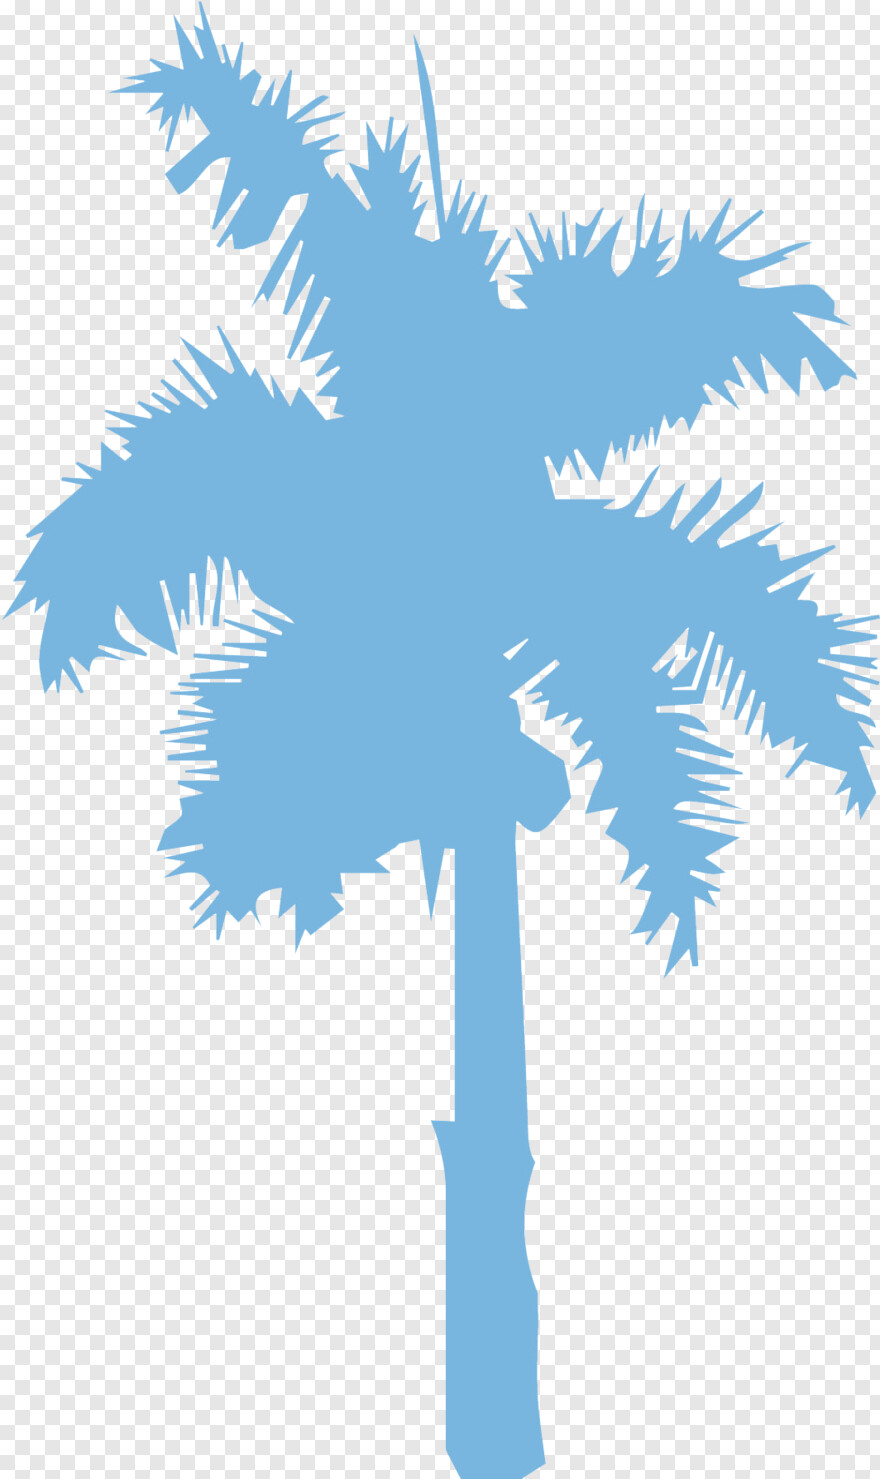 palm-tree-silhouette # 330440